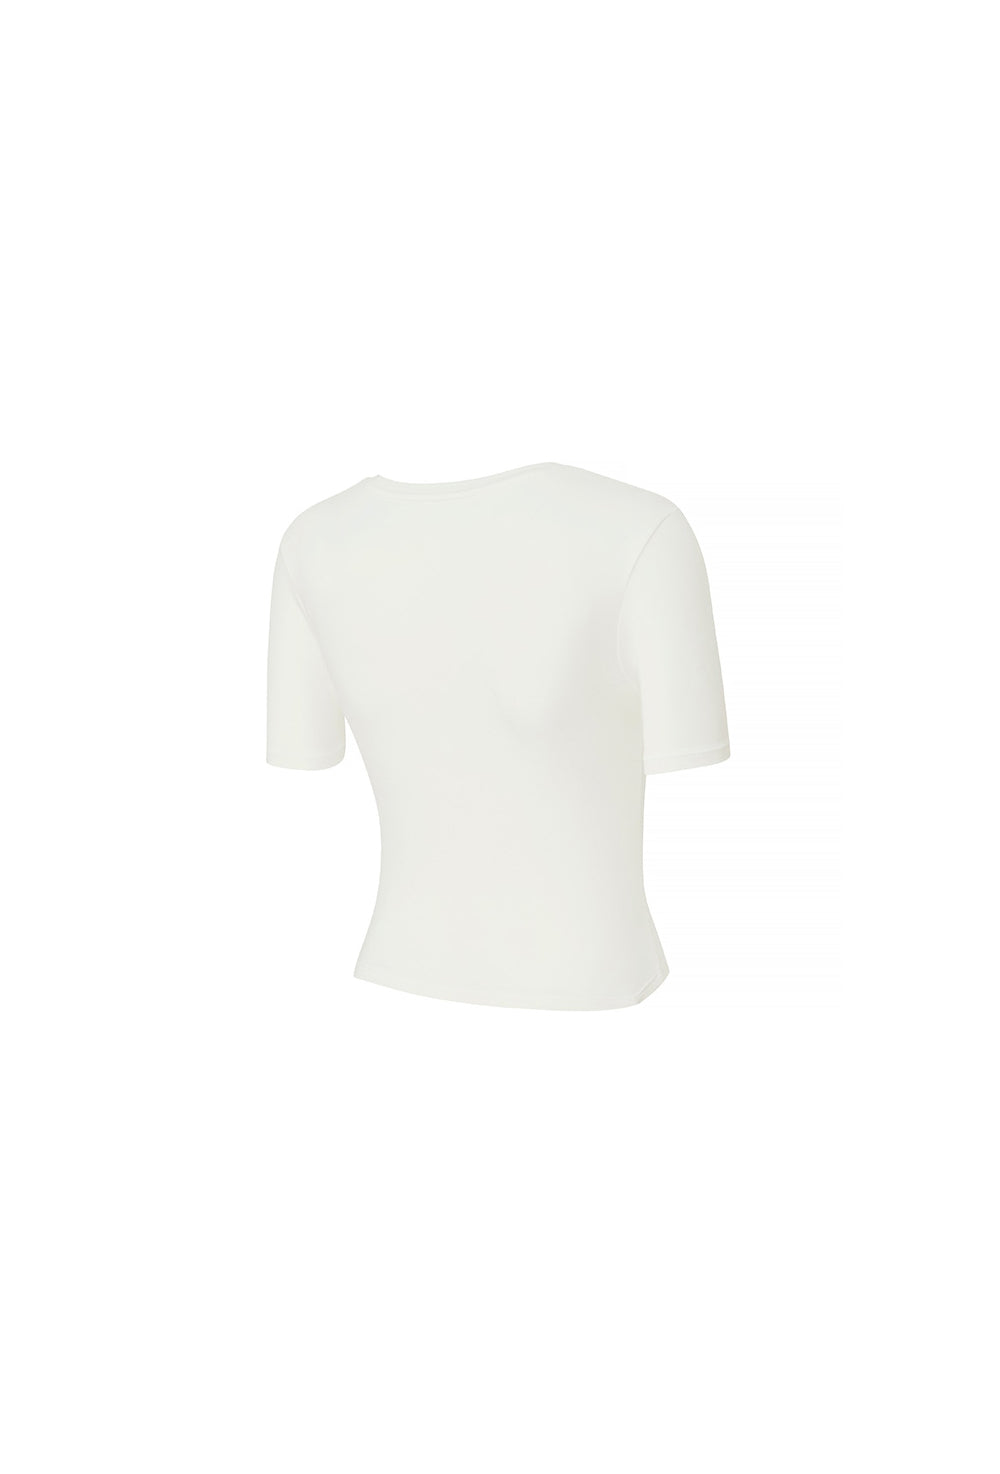 Side Shirring Unbalance Short Sleeve - Ivory